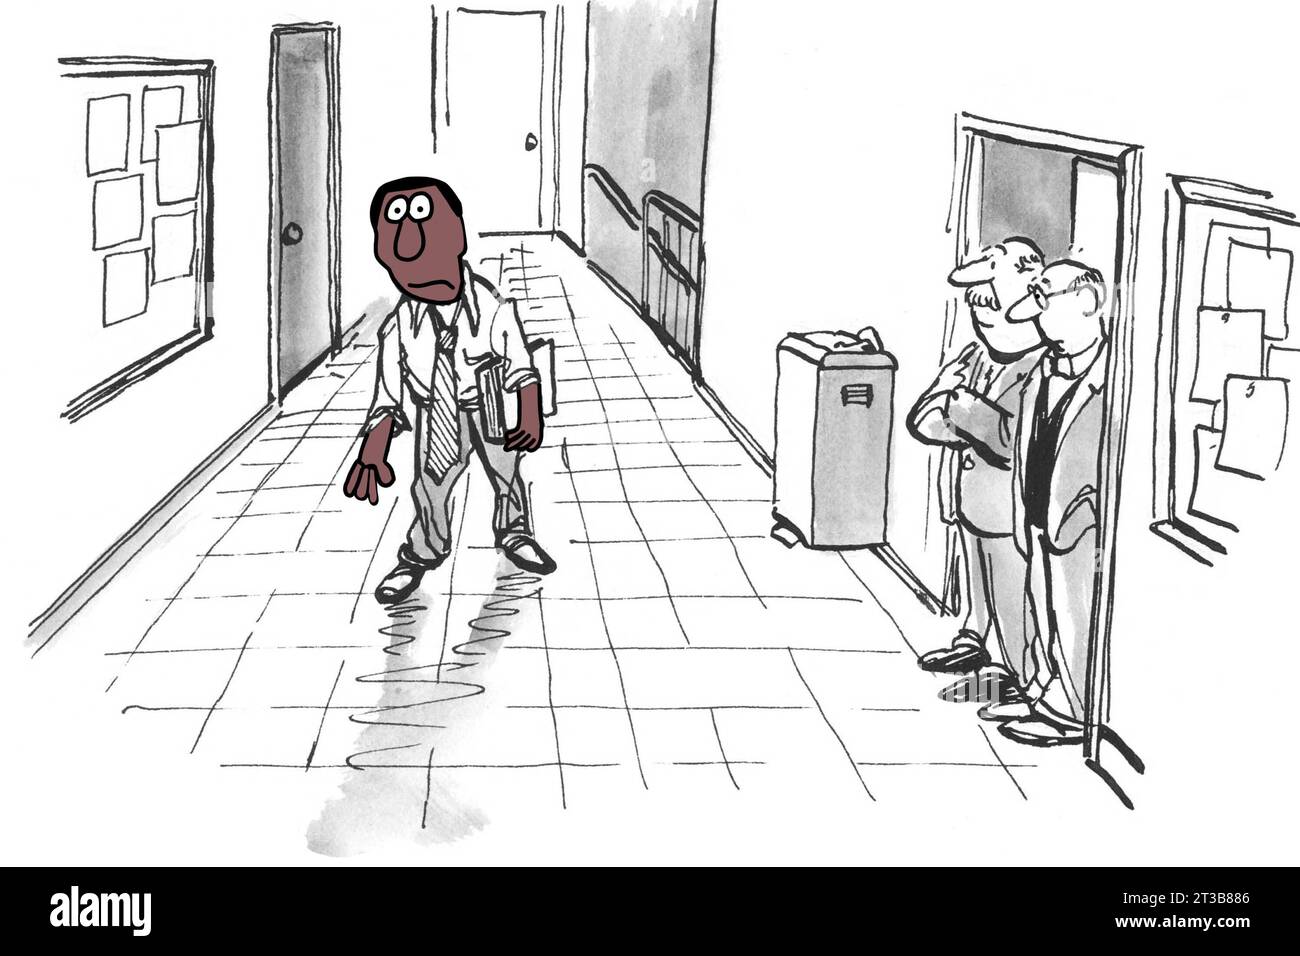 Un professeur noir traîne son moi épuisé dans le couloir d'un bâtiment universitaire. Banque D'Images